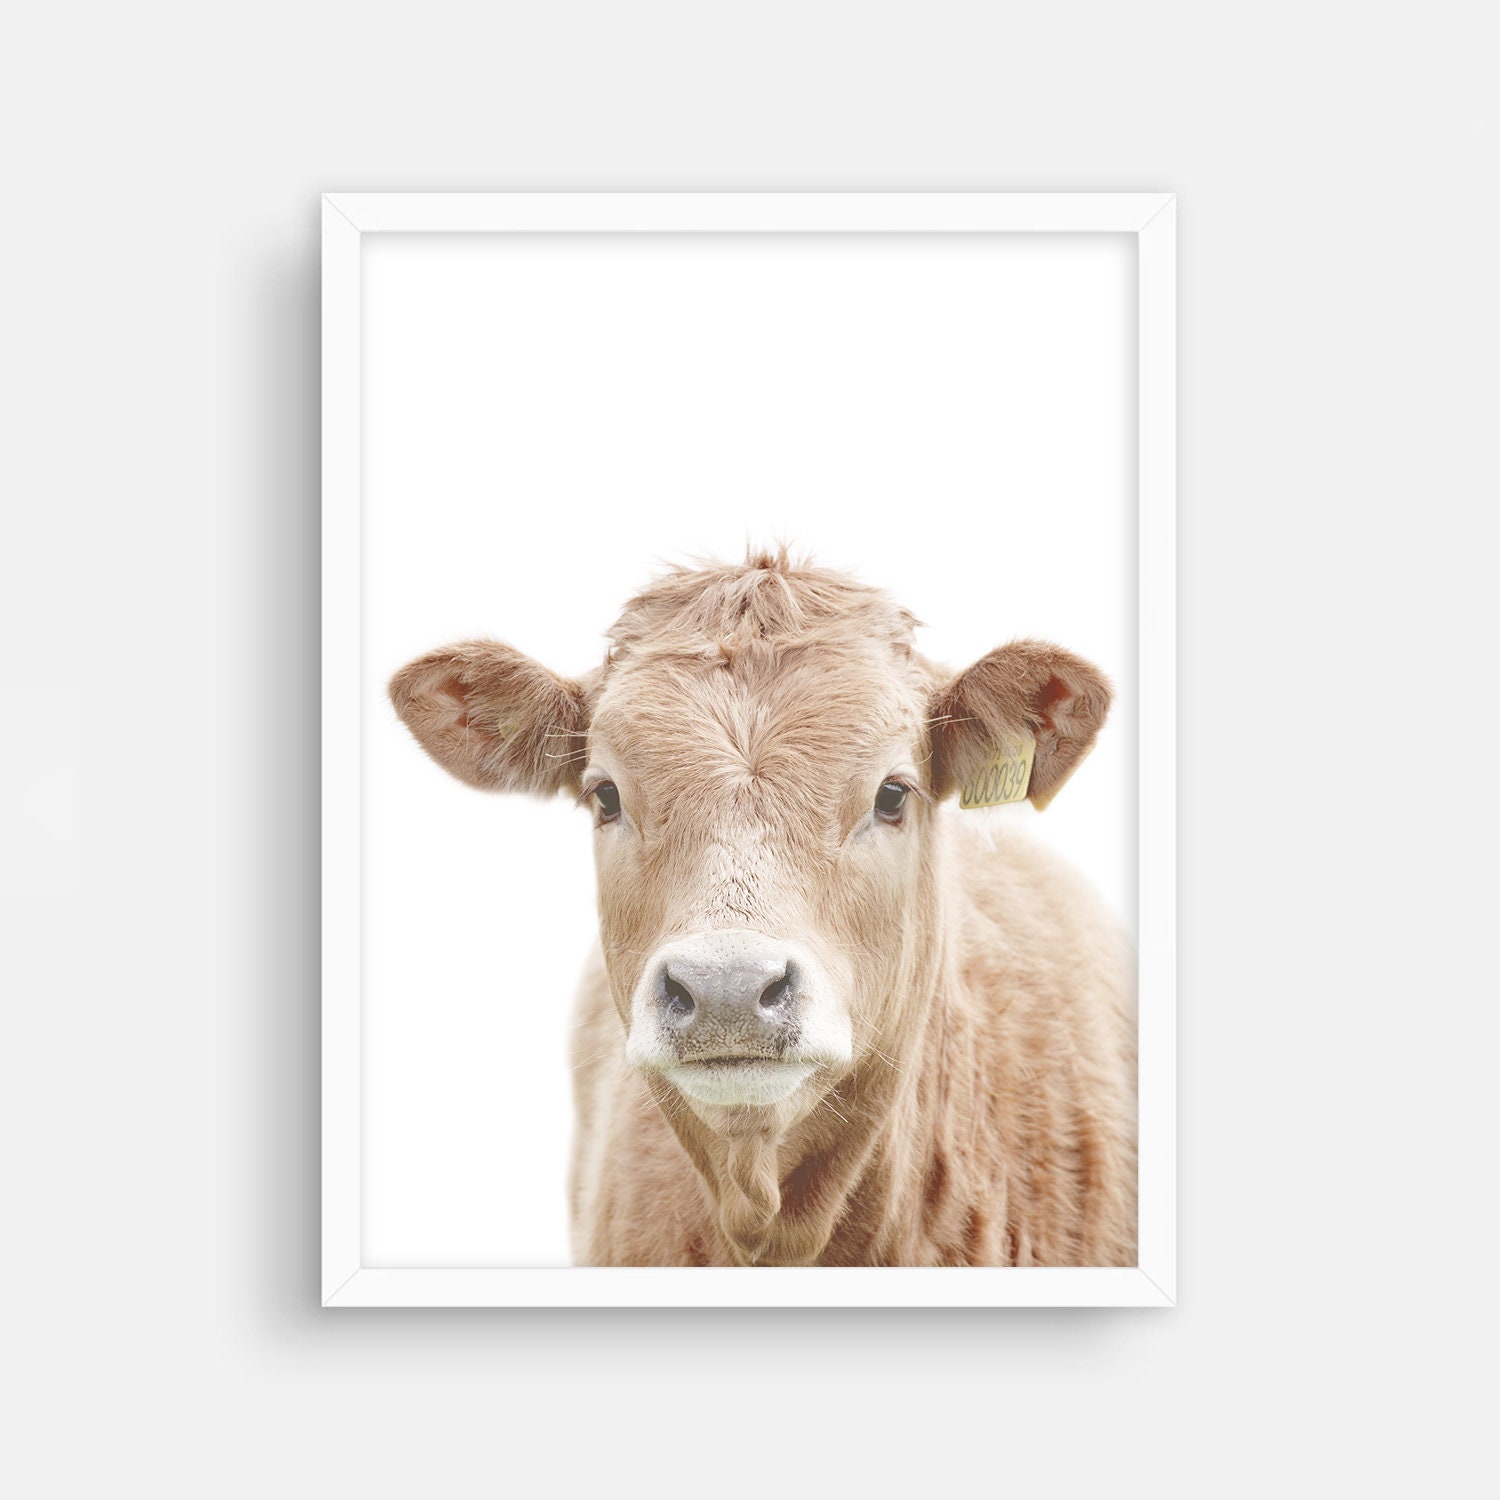 Farmer Cattle Rancher Motivational Poster Art Print Cow Office Wall Decor Gift 